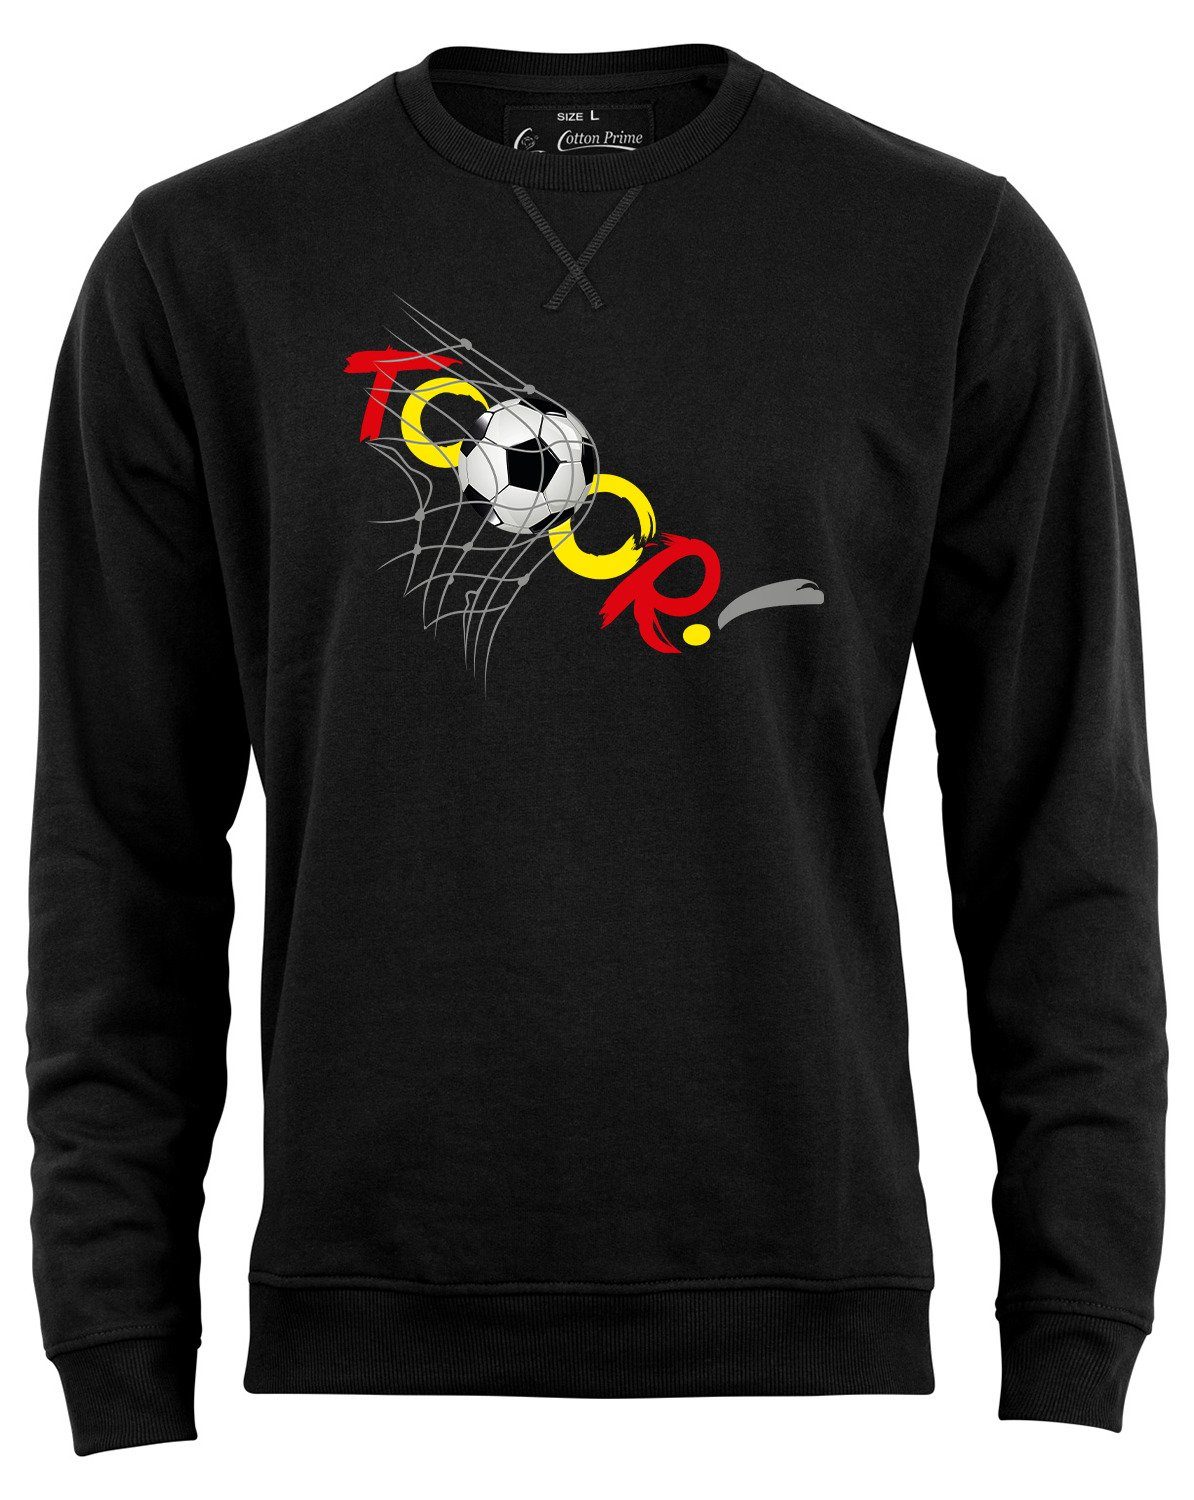 Fußball Cotton Prime® mit Sweatshirt weichem Innenfleece Schwarz Goal